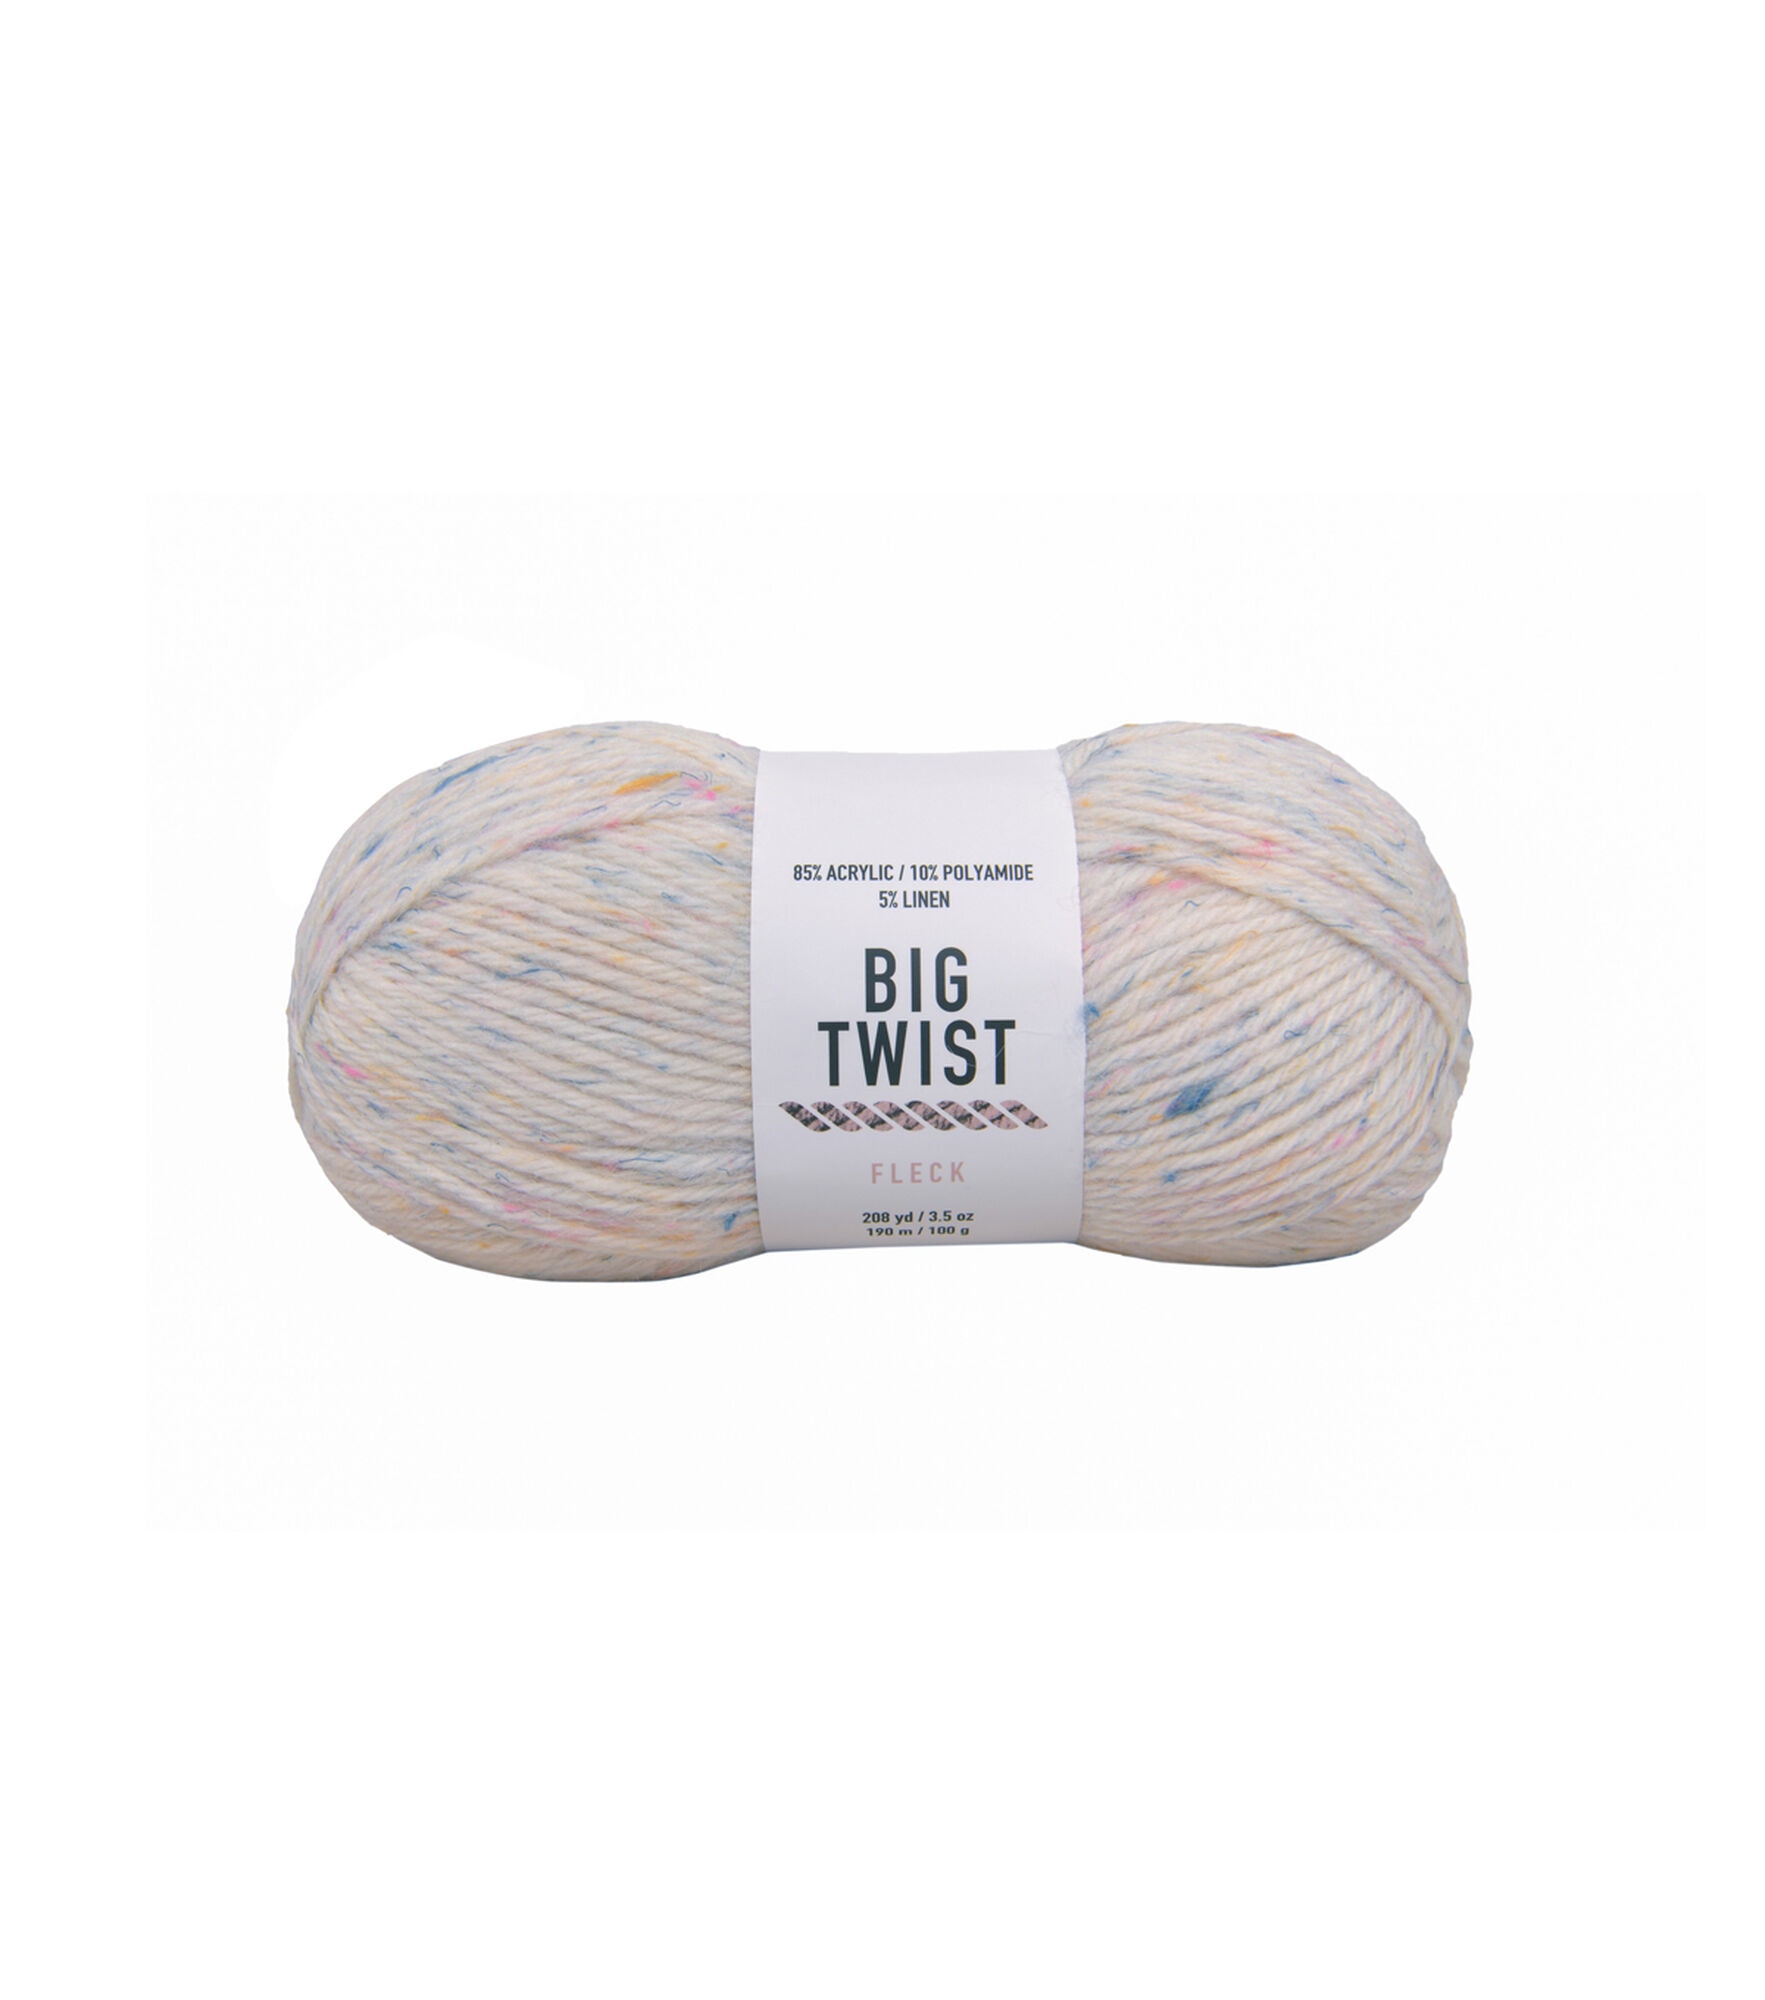 Big Twist Fleck 208yds Worsted Acrylic Blend Yarn by Big Twist